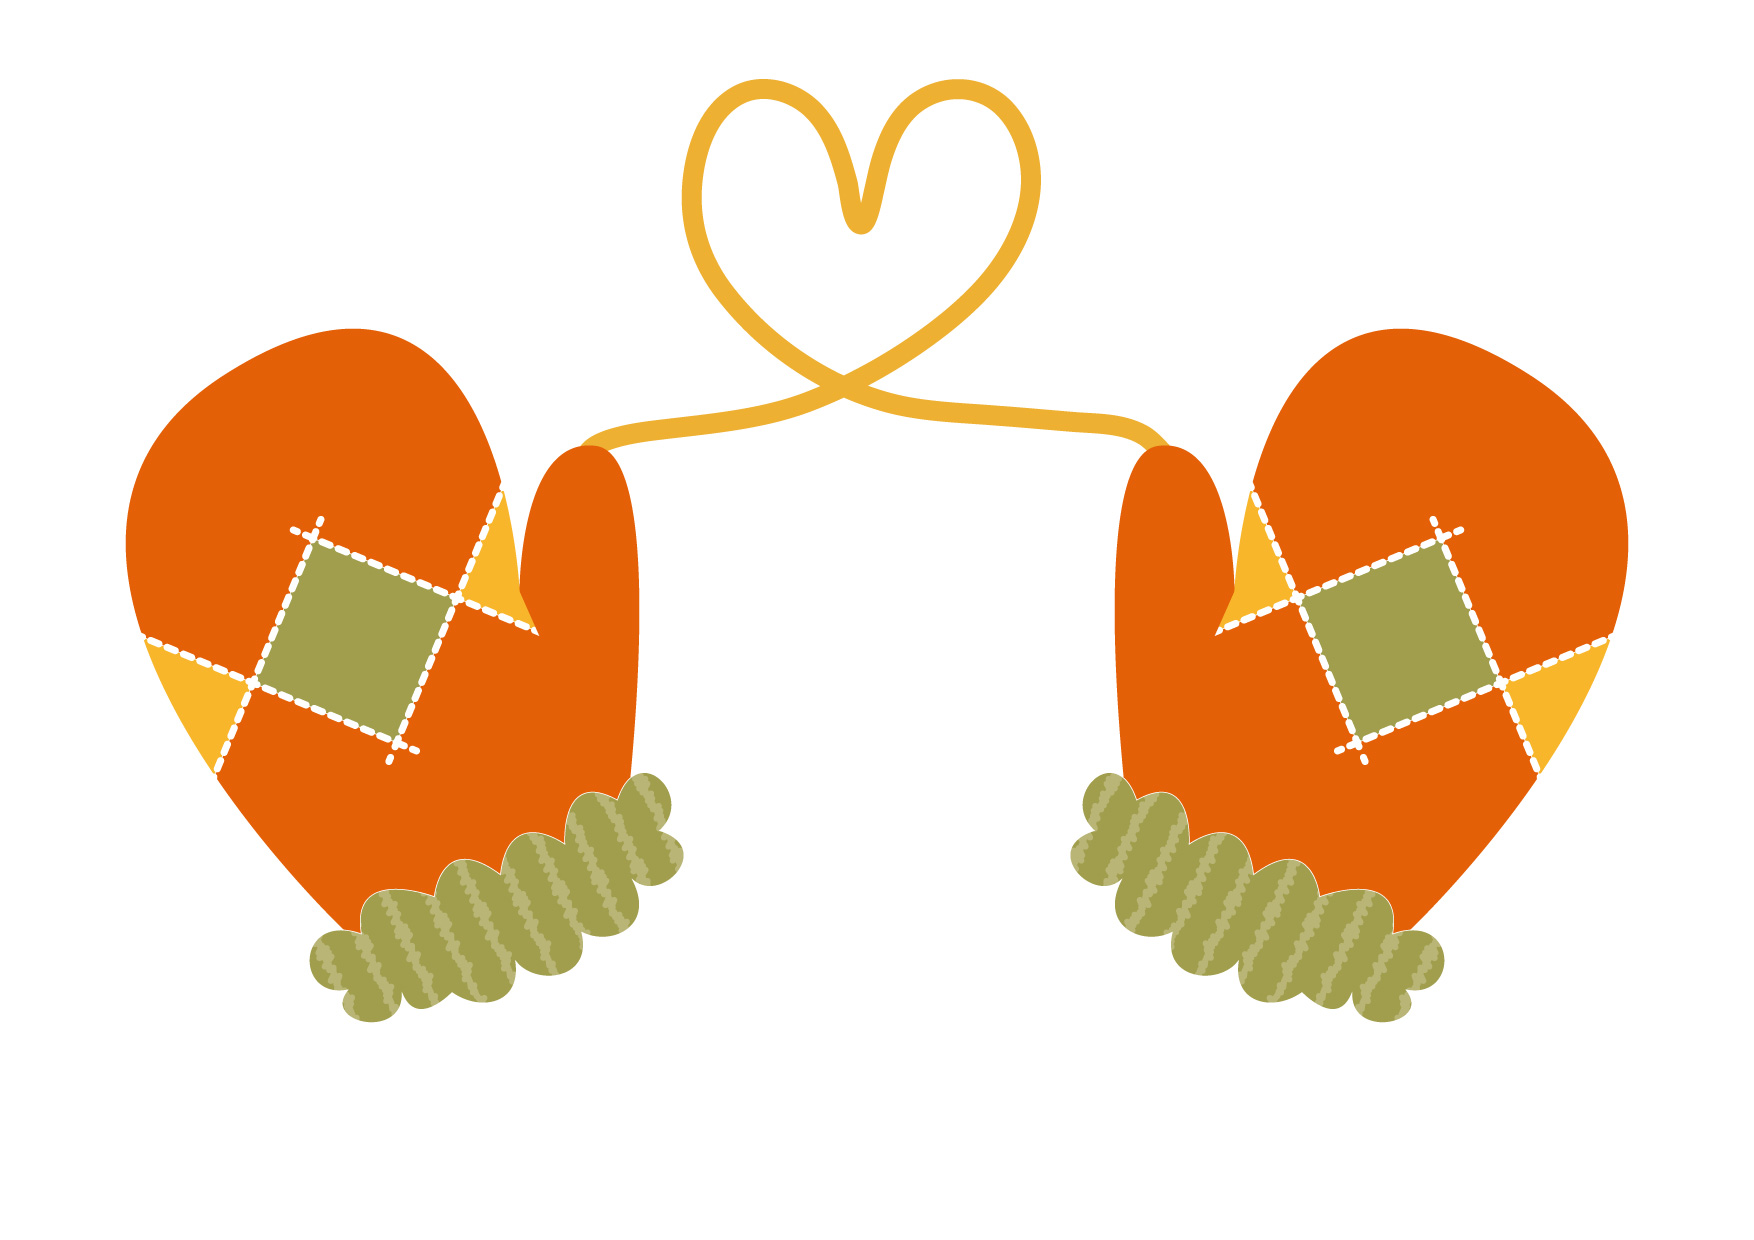 可愛いイラスト無料 手袋 ハート オレンジ色 Free Illustration Gloves Heart Orange 公式 イラスト 素材サイト イラストダウンロード